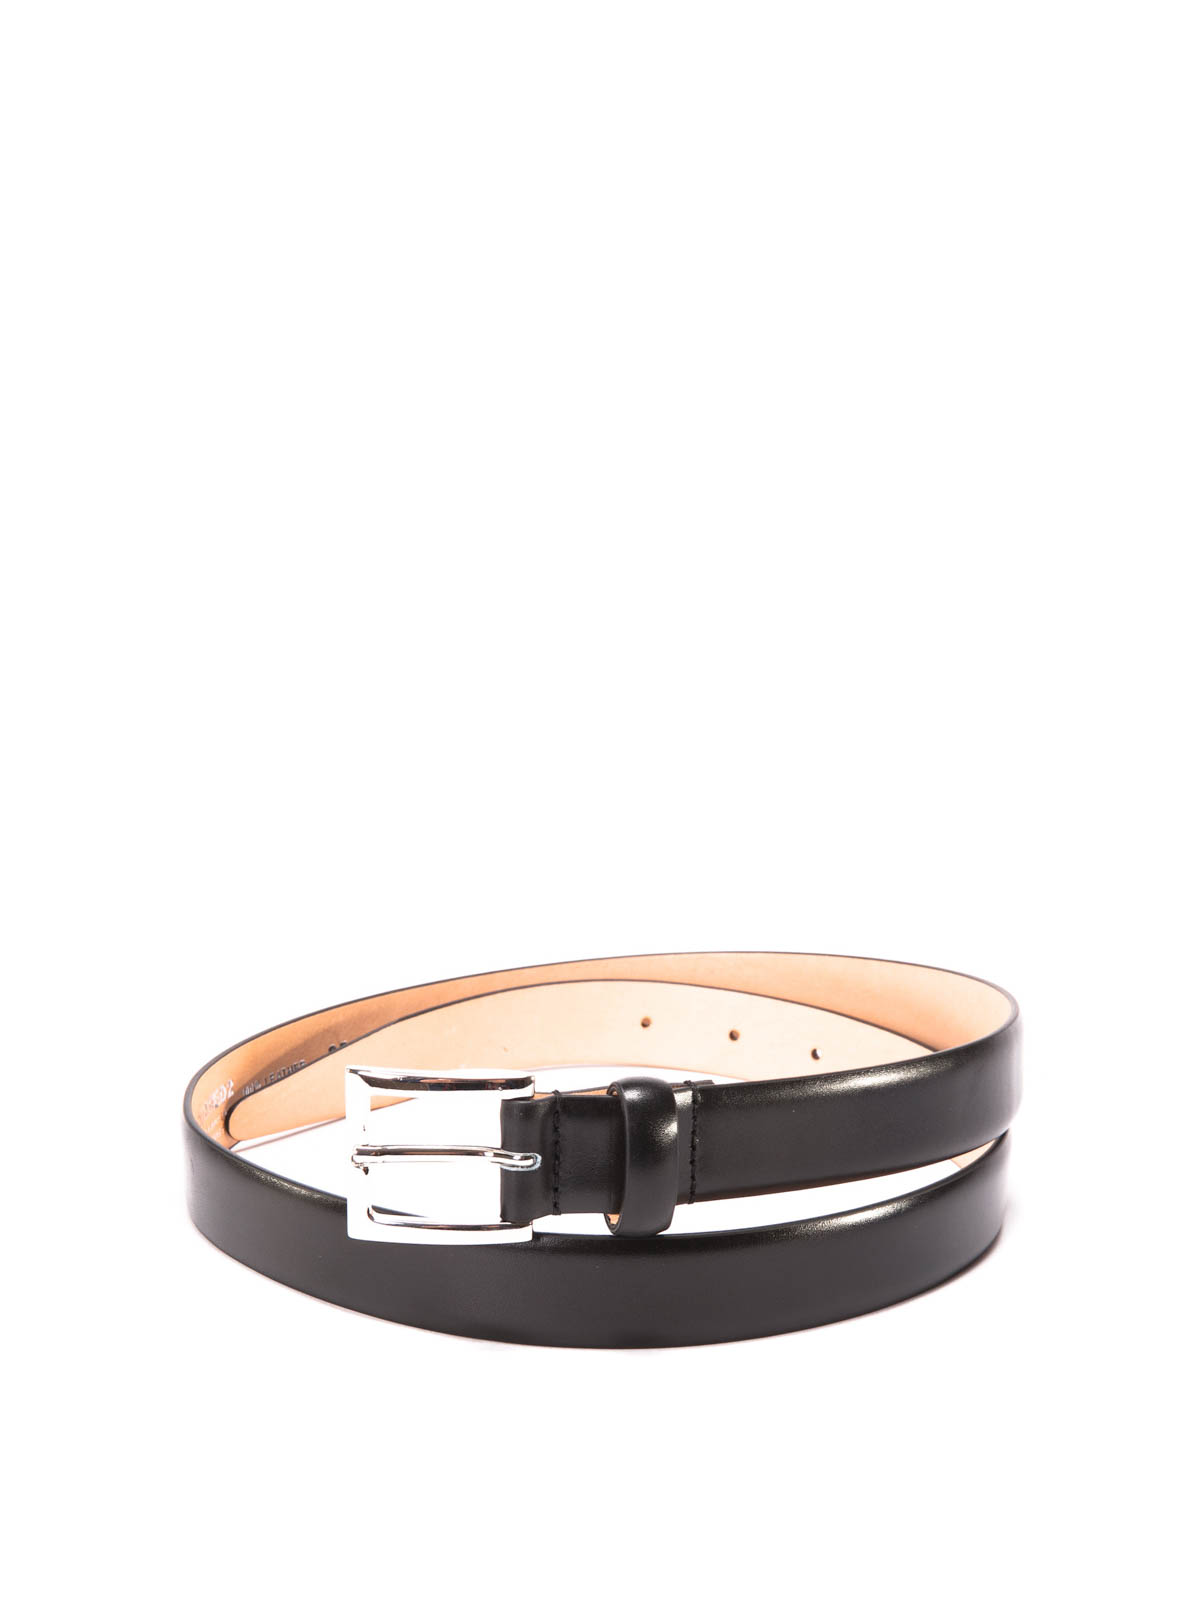 Belts Dsquared2 - Classic leather belt - BE4051015M802 | iKRIX.com